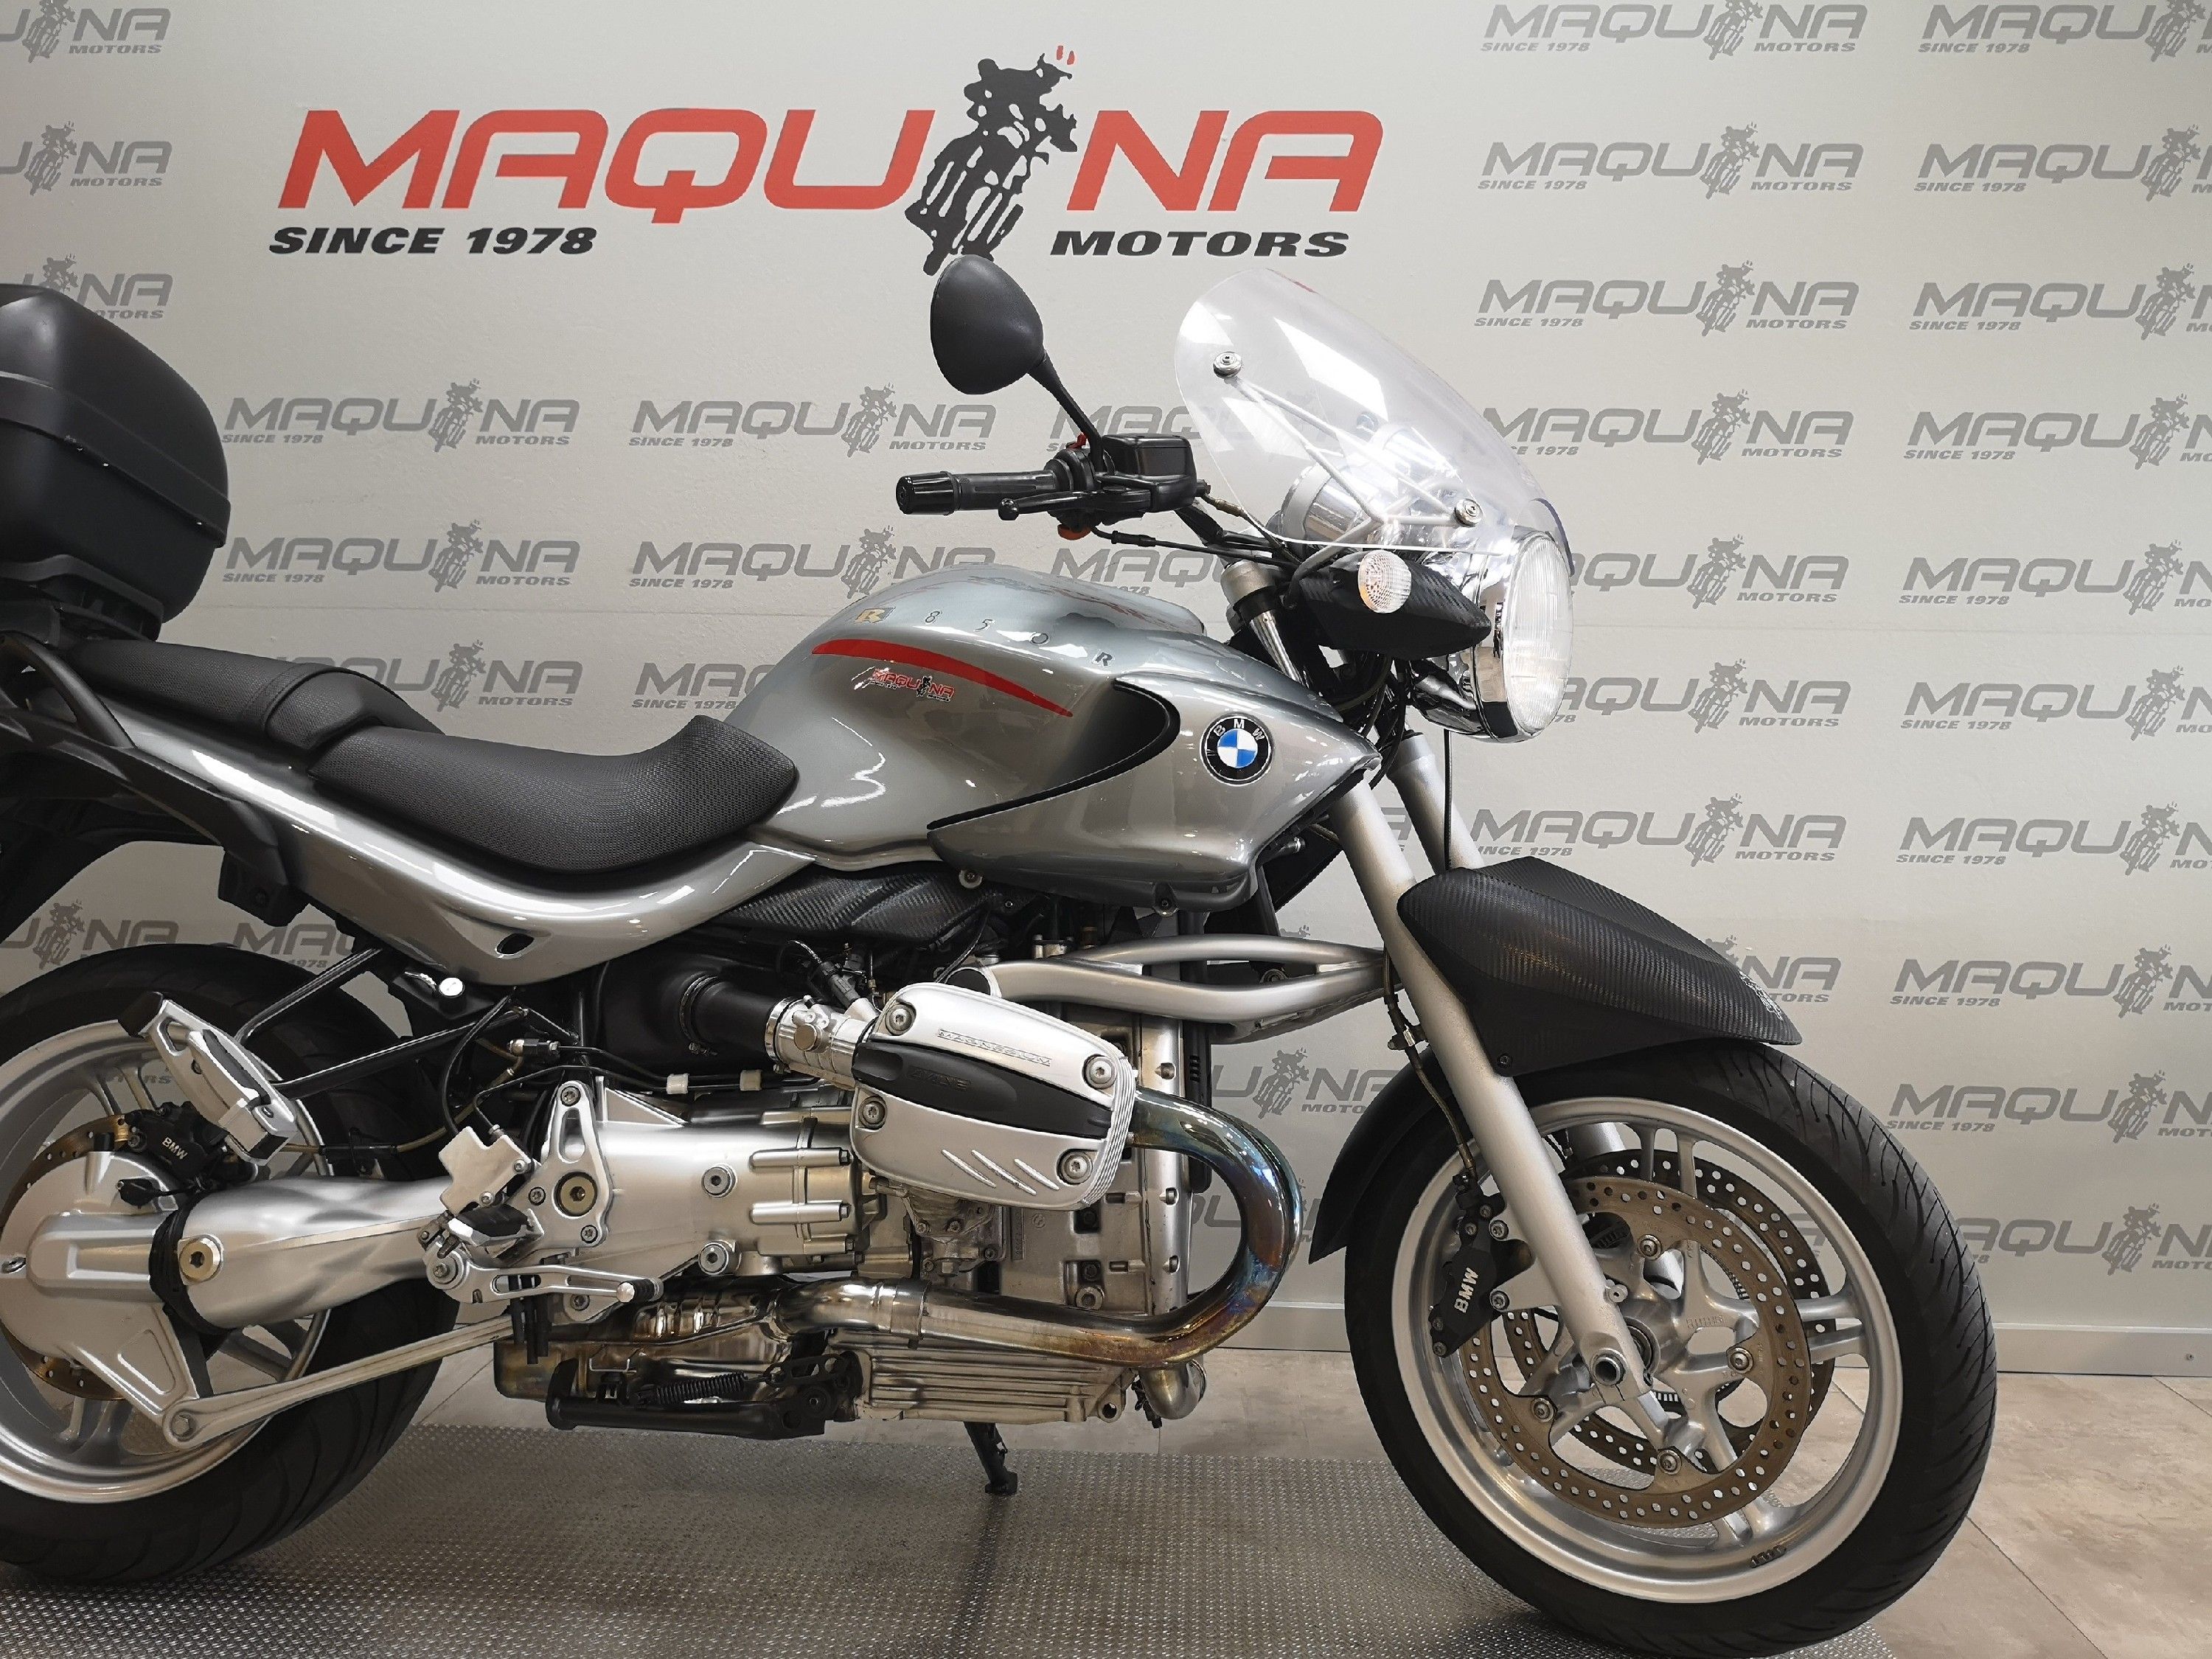 BMW R R – Maquina Motors motos ocasión